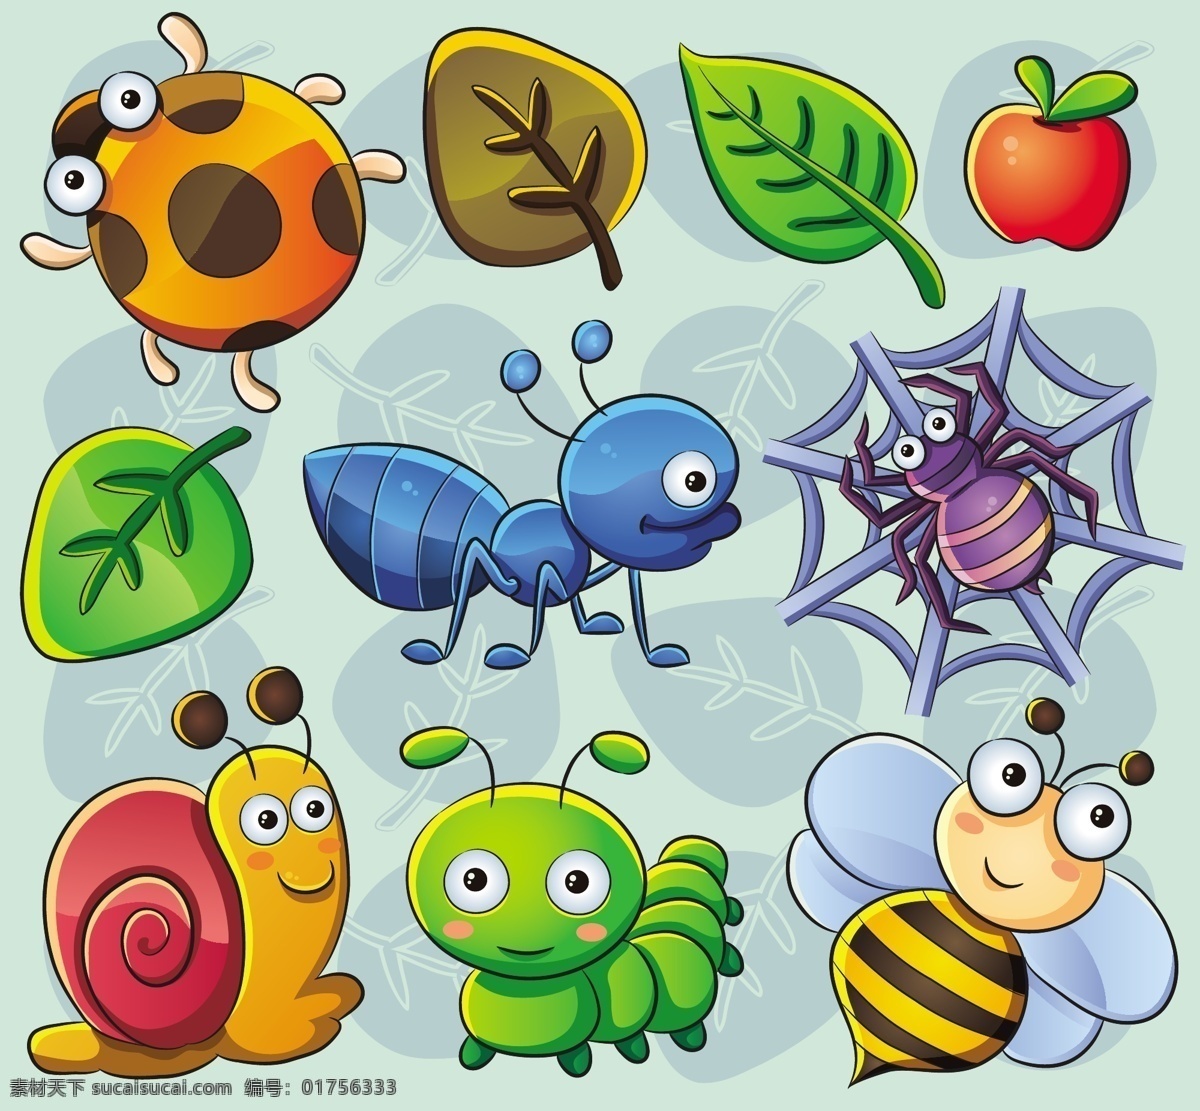 可爱卡通昆虫 昆虫 卡通 蚂蚁 金龟子 蜗牛 蜜蜂 蜘蛛 毛毛虫 树叶 苹果 卡通矢量素材 矢量